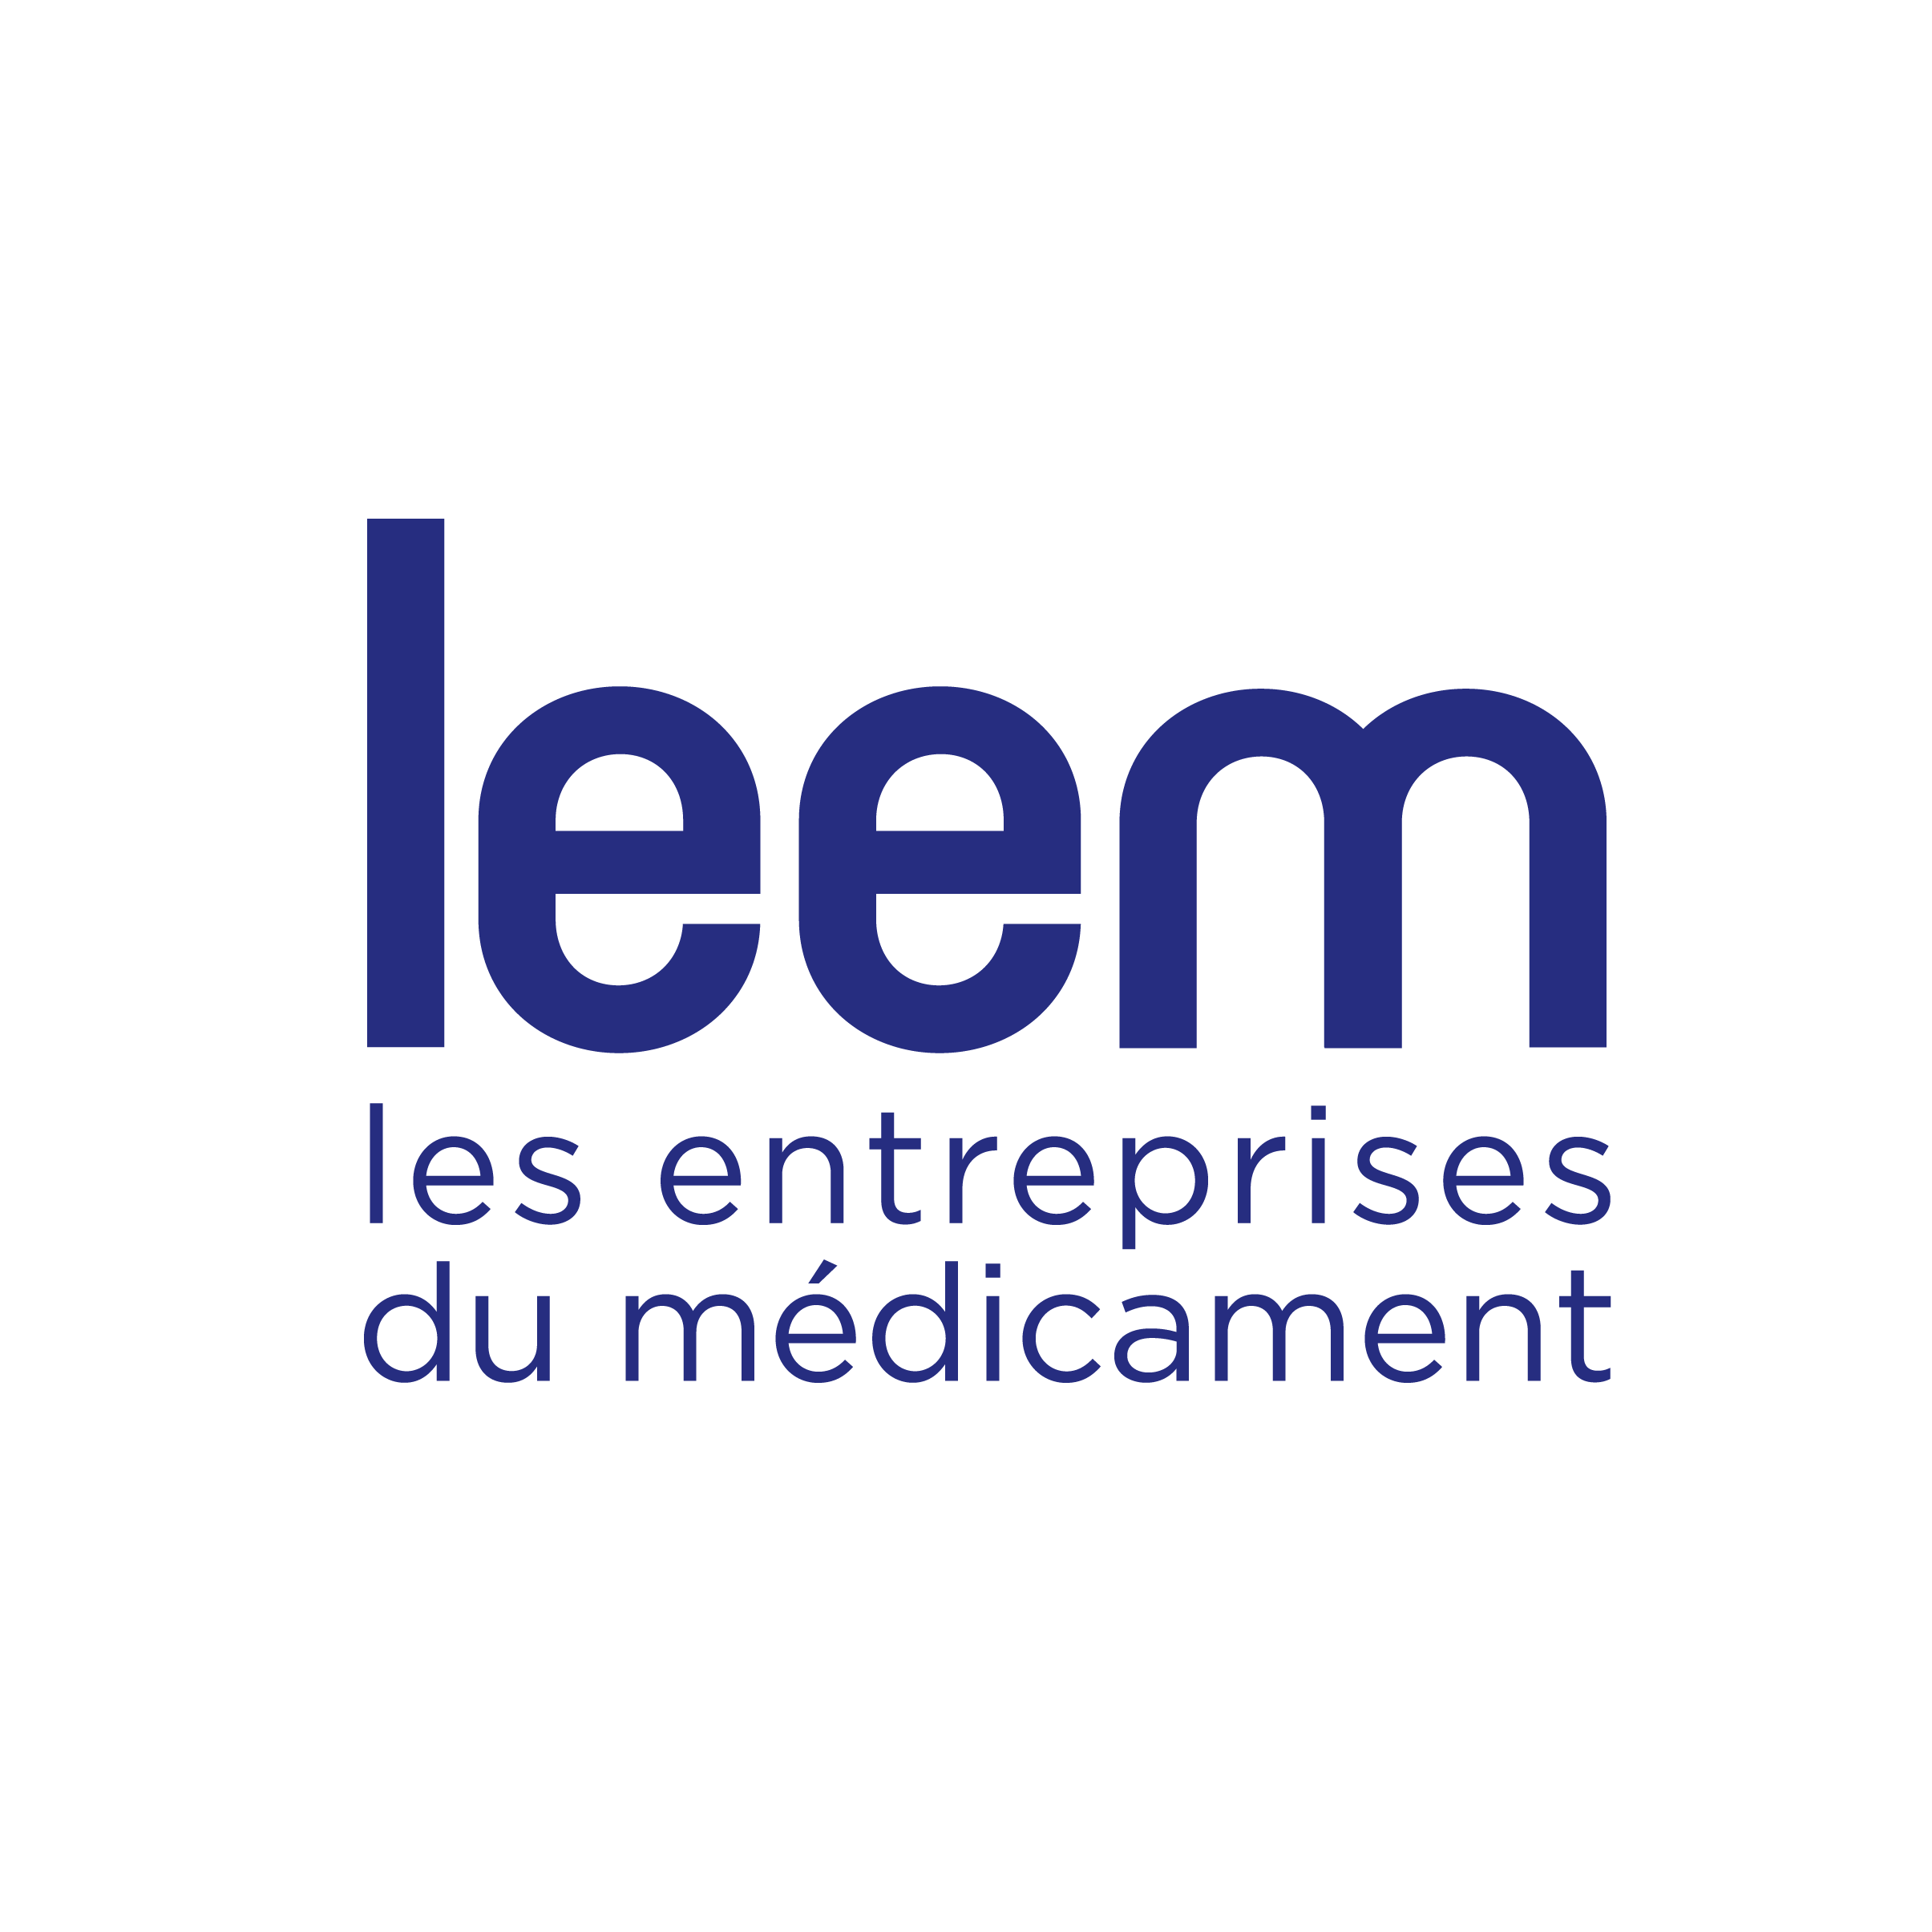 Les Entreprises du Médicament (LEEM) company image